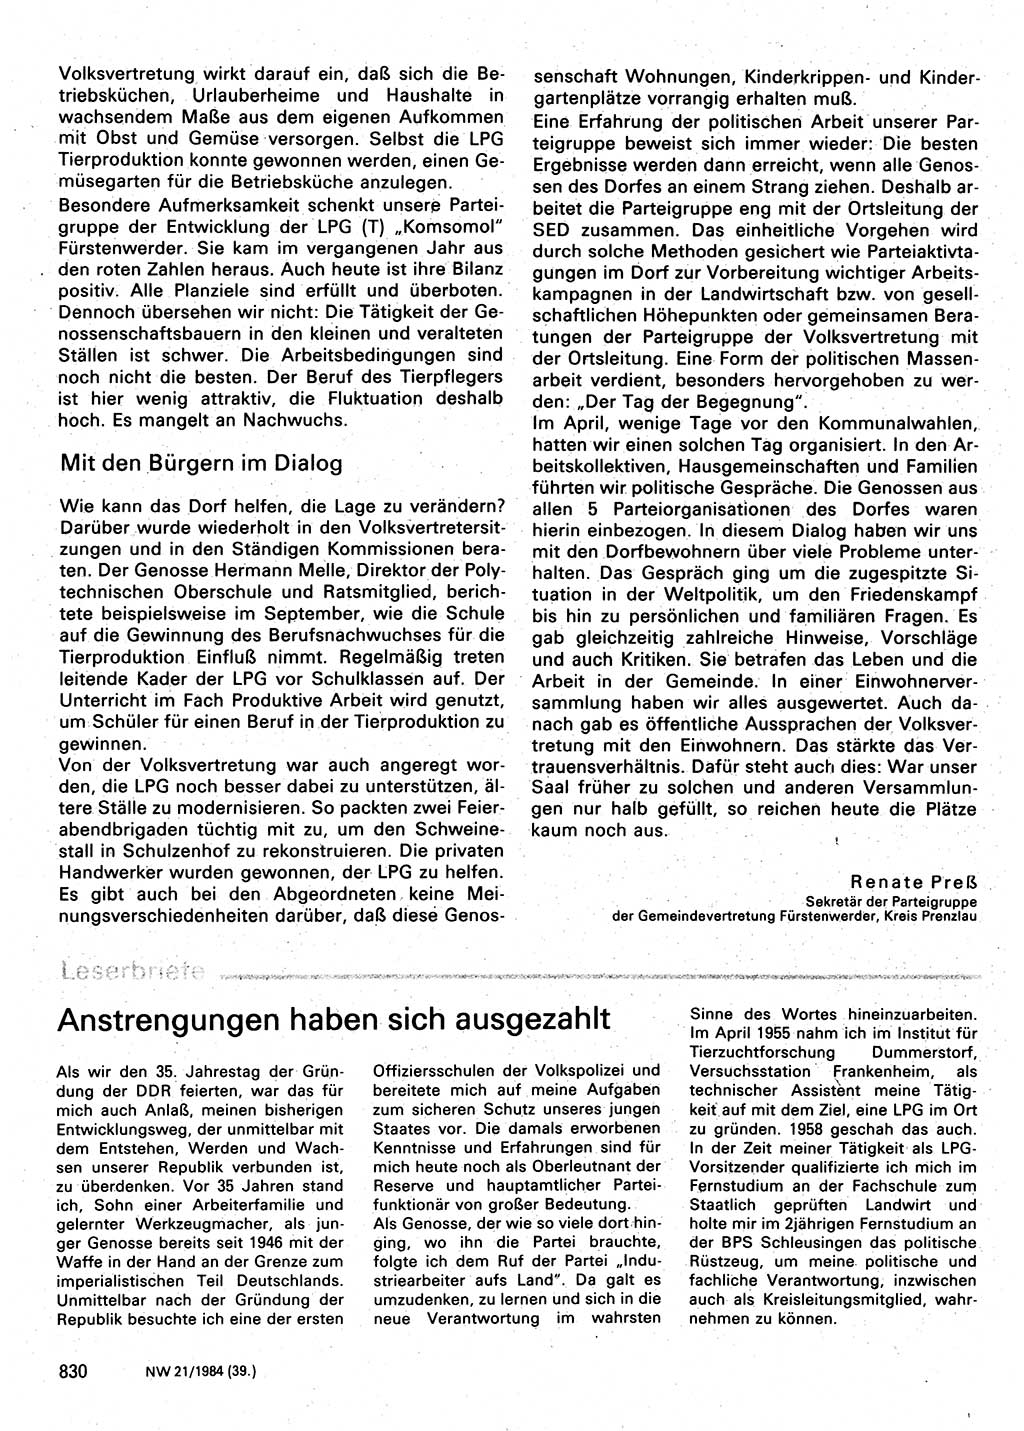 Neuer Weg (NW), Organ des Zentralkomitees (ZK) der SED (Sozialistische Einheitspartei Deutschlands) für Fragen des Parteilebens, 39. Jahrgang [Deutsche Demokratische Republik (DDR)] 1984, Seite 830 (NW ZK SED DDR 1984, S. 830)